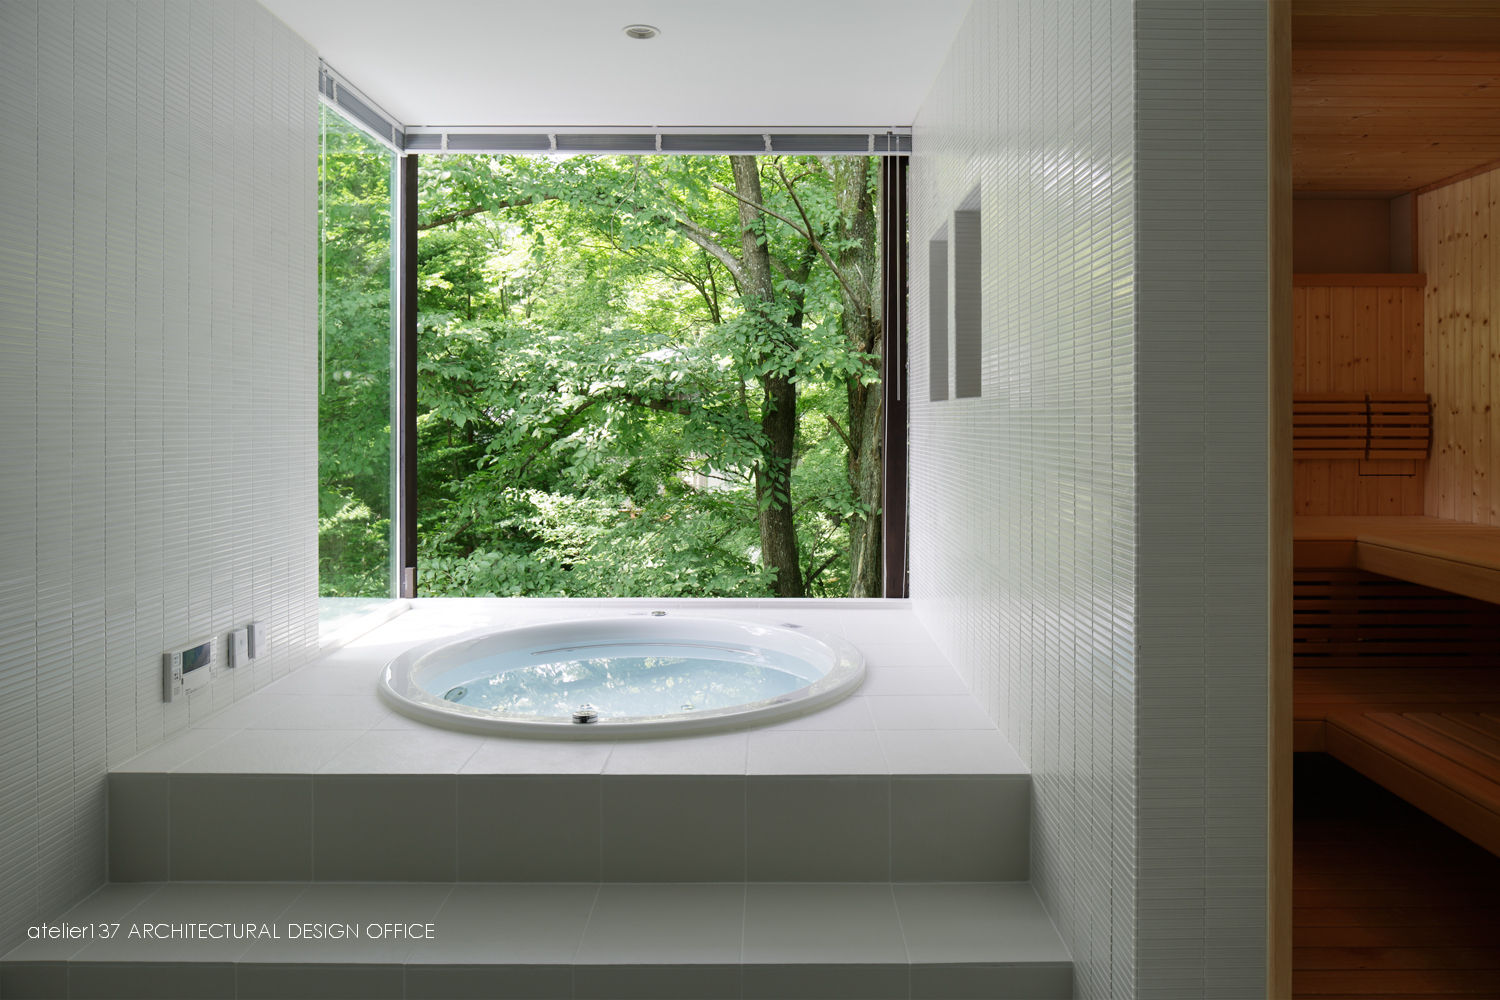 浴室～035カルイザワハウス atelier137 ARCHITECTURAL DESIGN OFFICE モダンスタイルの お風呂 タイル 浴室,露天風呂,眺望,サウナ,家庭用サウナ